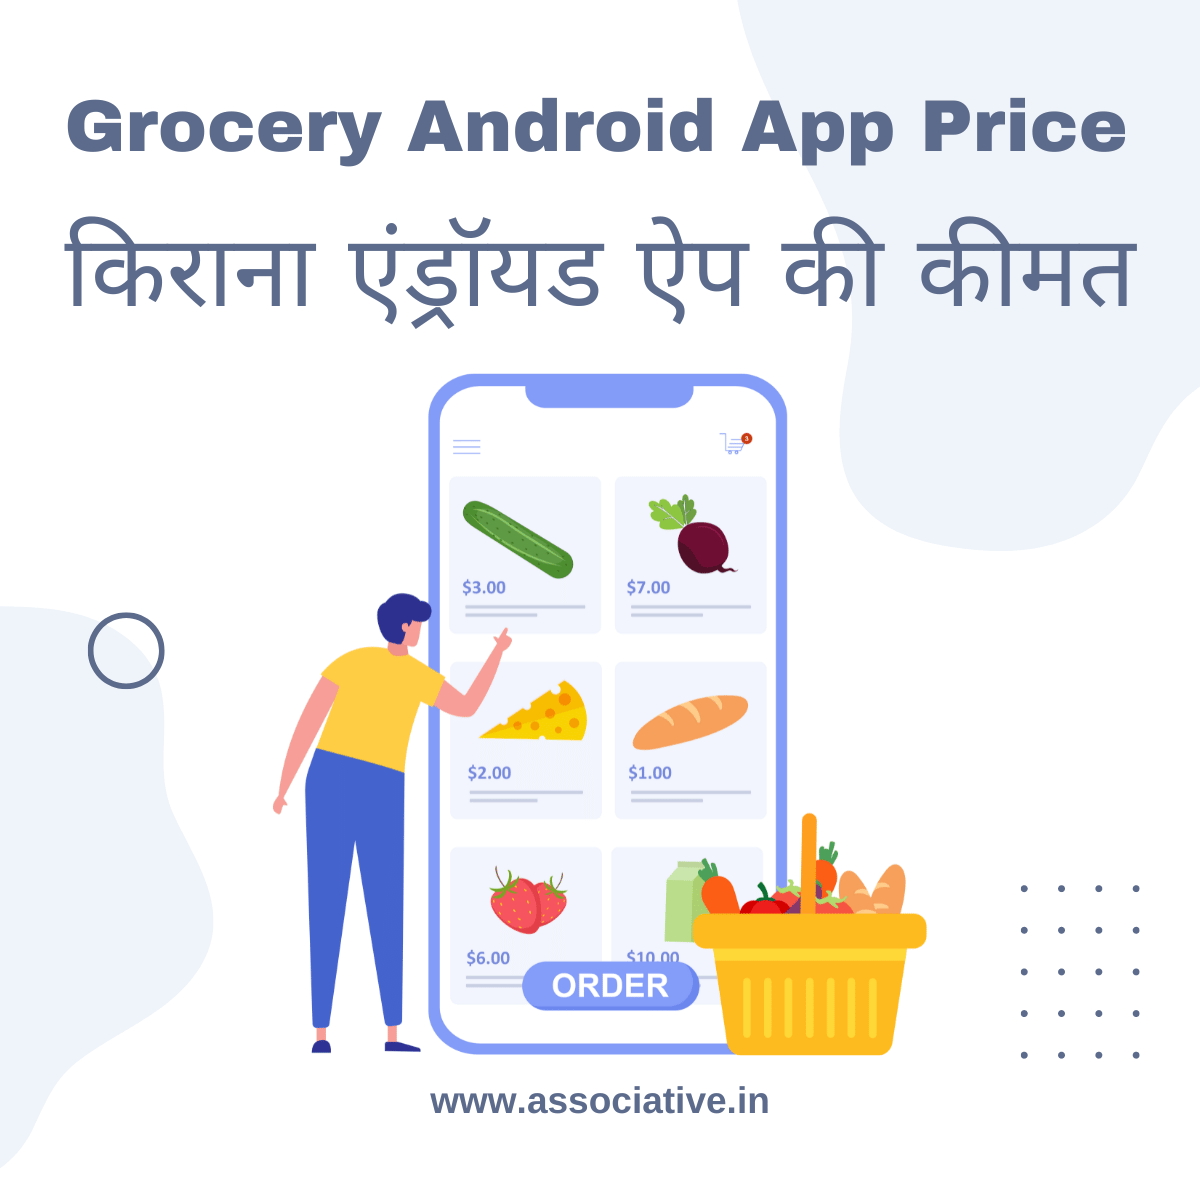 Grocery Android App Price

किराना एंड्रॉयड ऐप की कीमत